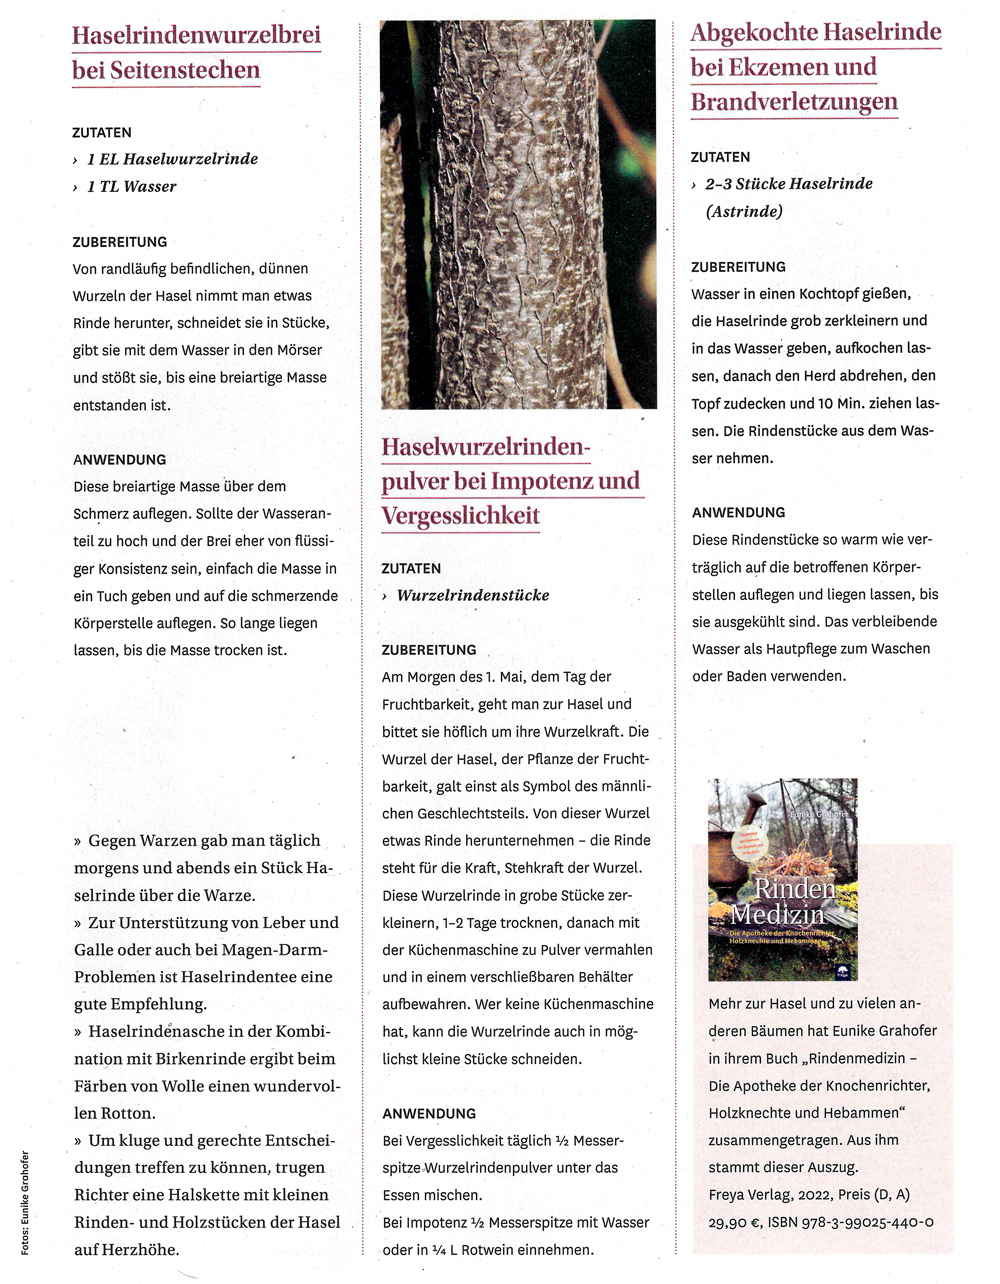 Seite 2 Presseartikel Naturapotheke. Inhalt: Rezepte Haselrindenwurzelbrei, Haselwurzelrindenpulver und abgekochte Haselrinde